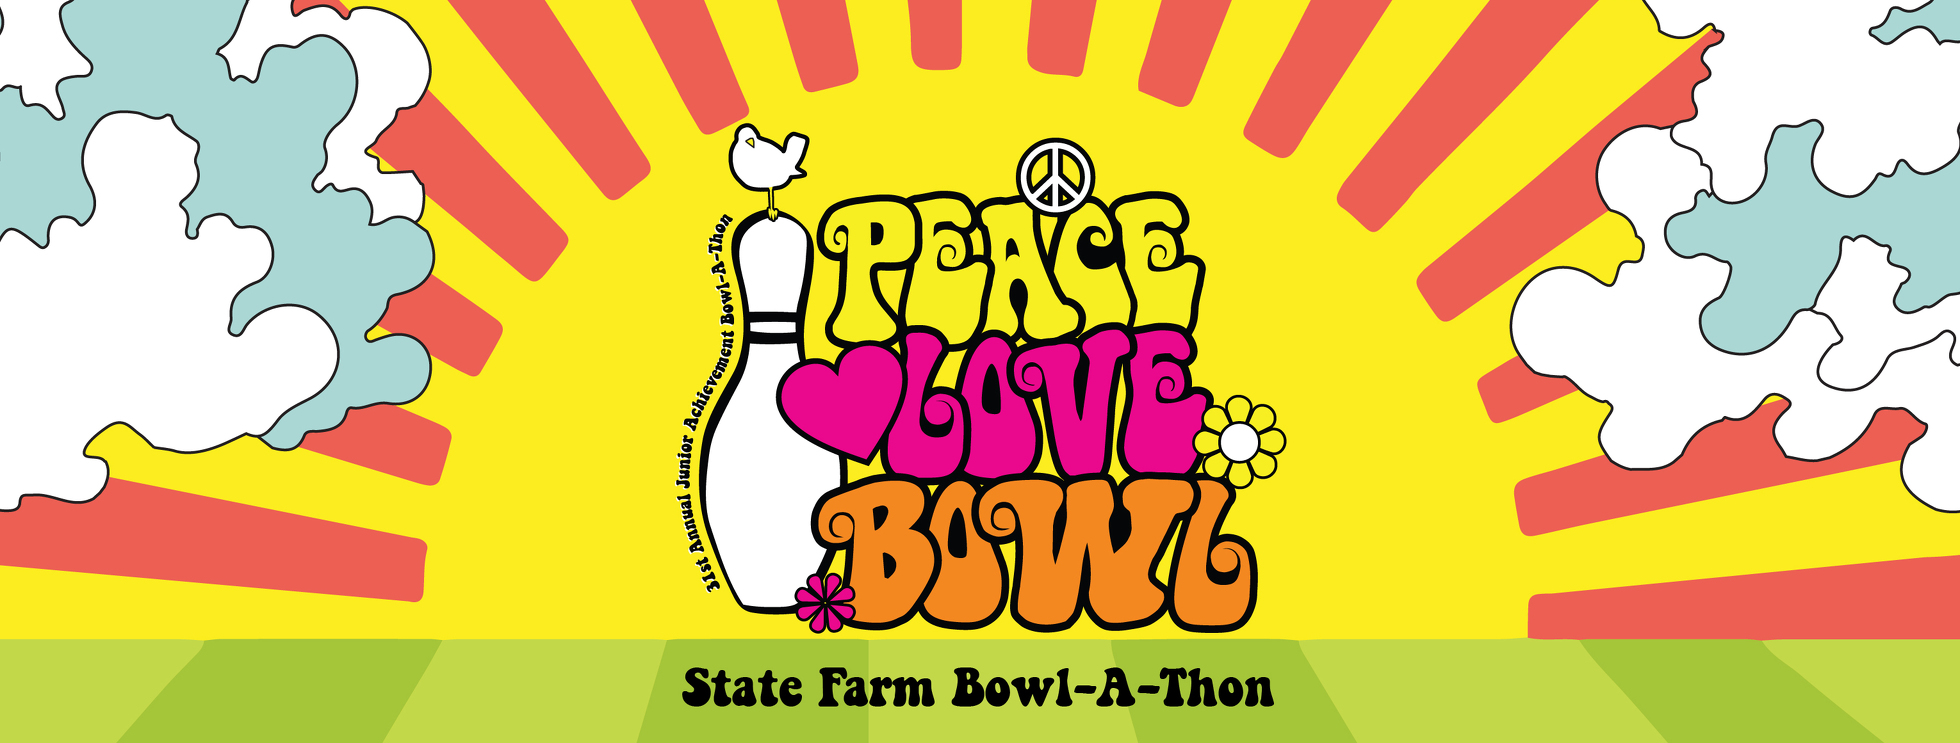 State Farm Bowl-A-Thon